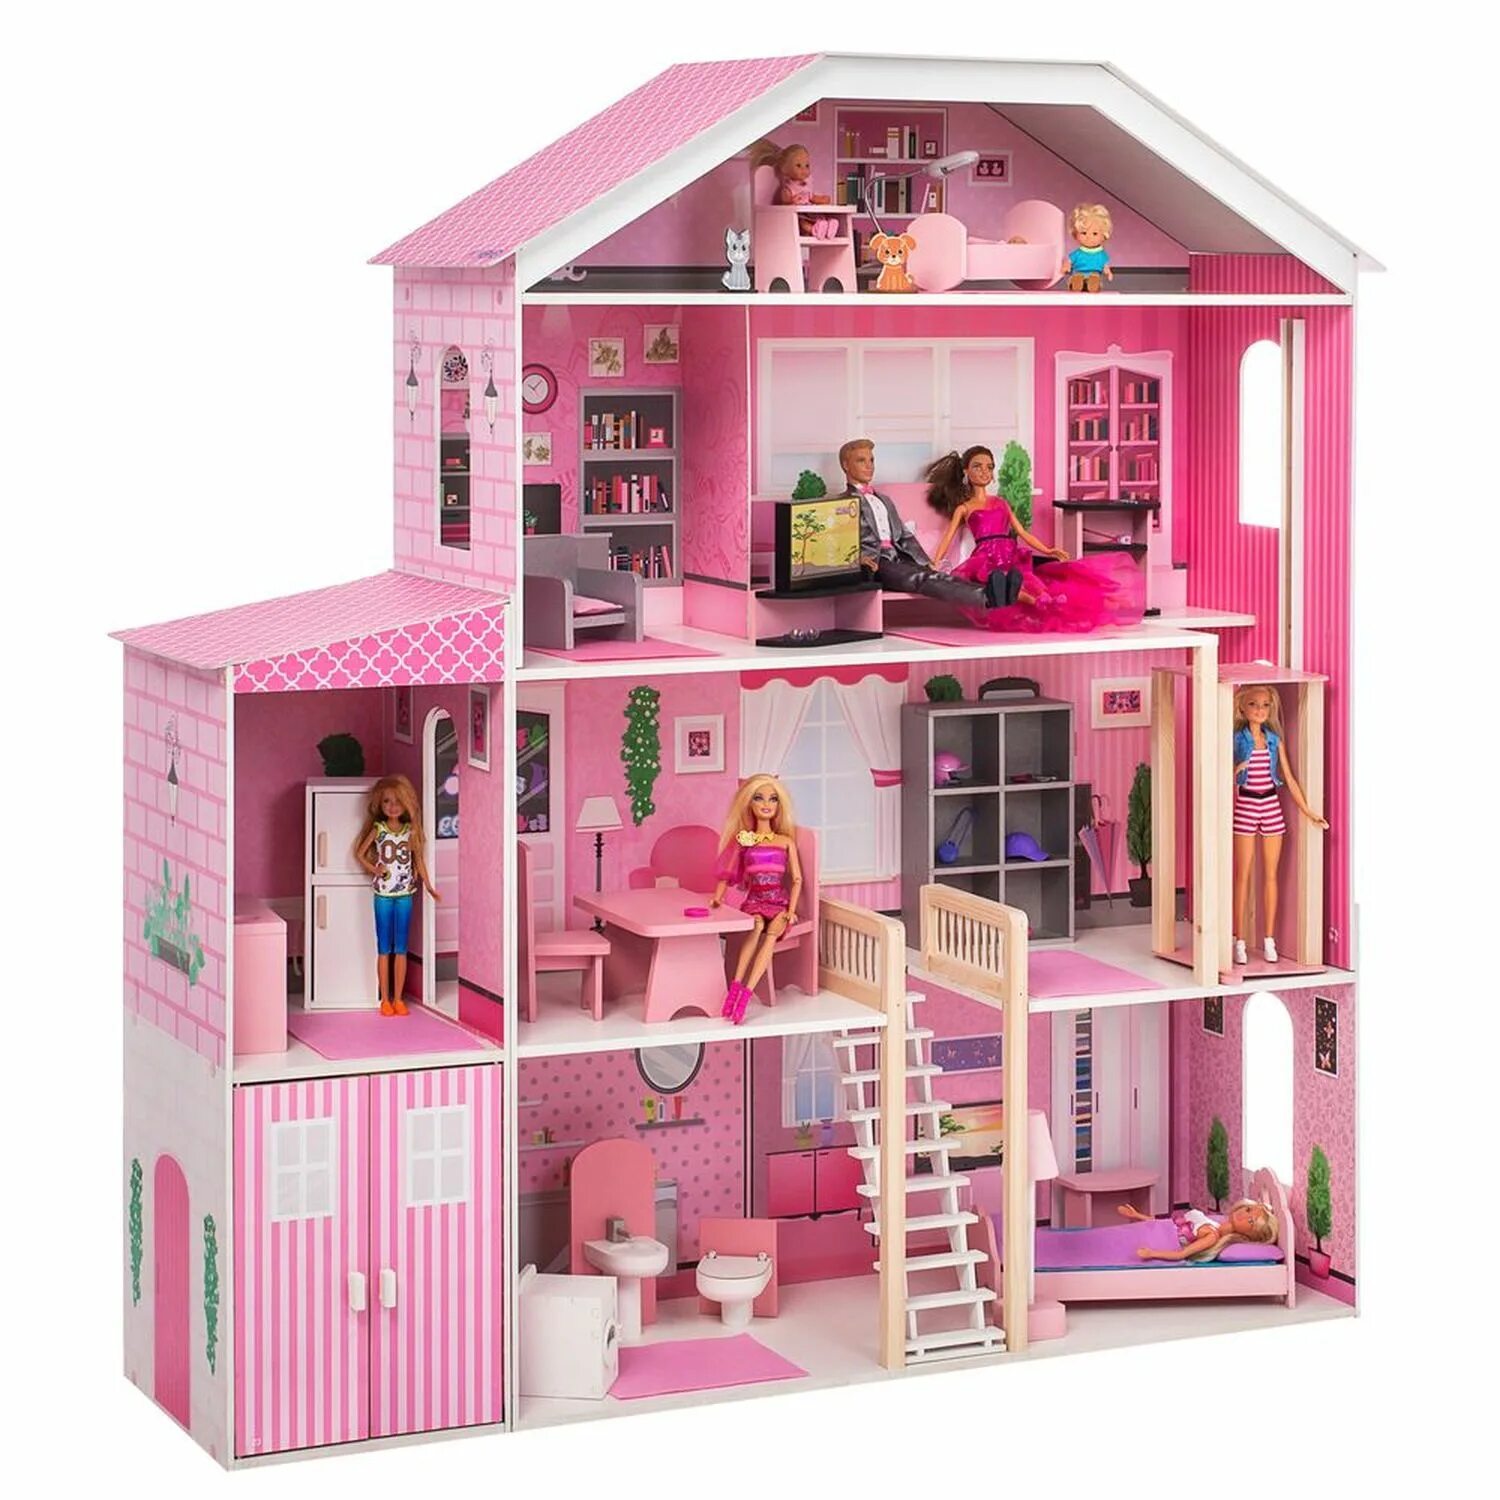 Paremo pd318. Кукольный дом Паремо. Велберис домик Барби. Большой кукольный домик для Барби.